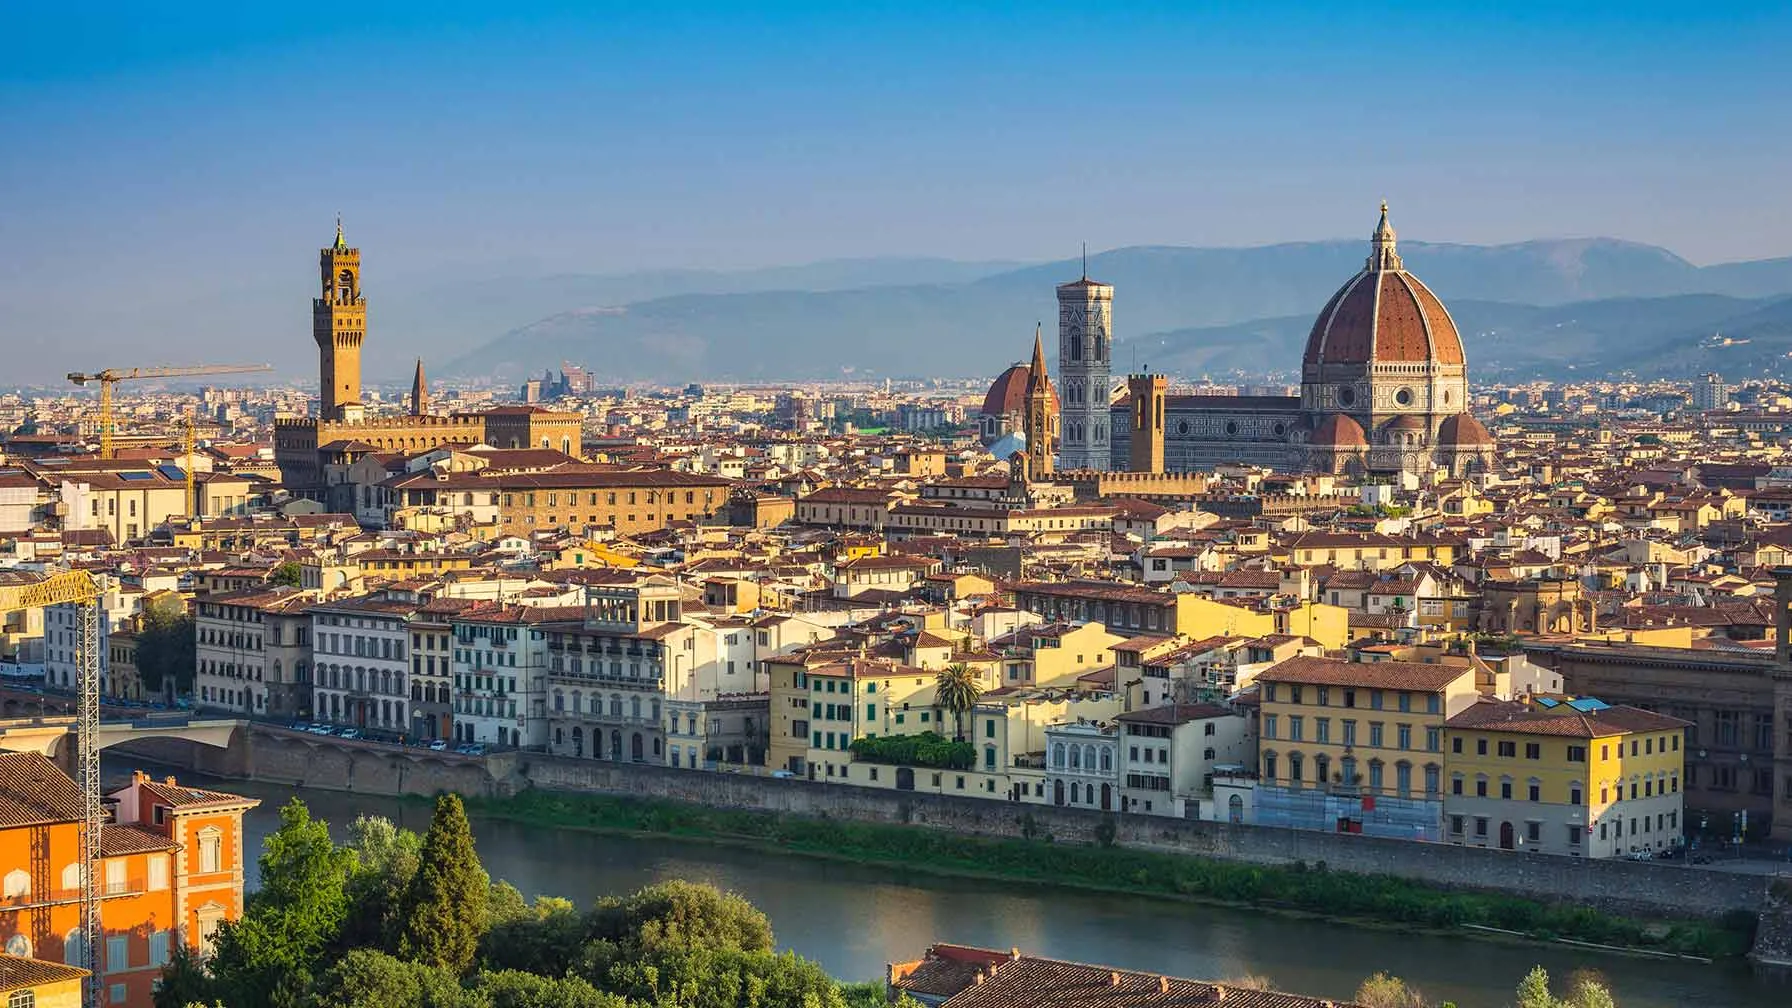 House Image of Florencia: El Destino Perfecto para Conocer la Historia de Italia